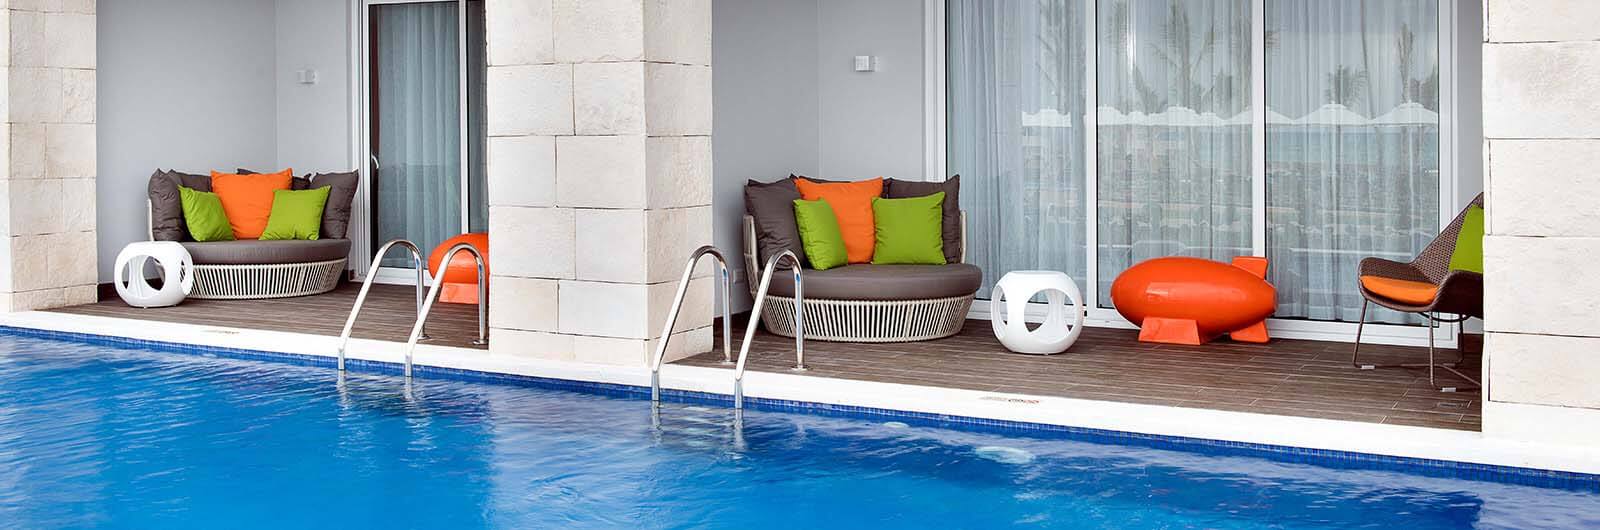 Nickelodeon Resort Punta Cana Accommodations - Flat Swim-Up Suite